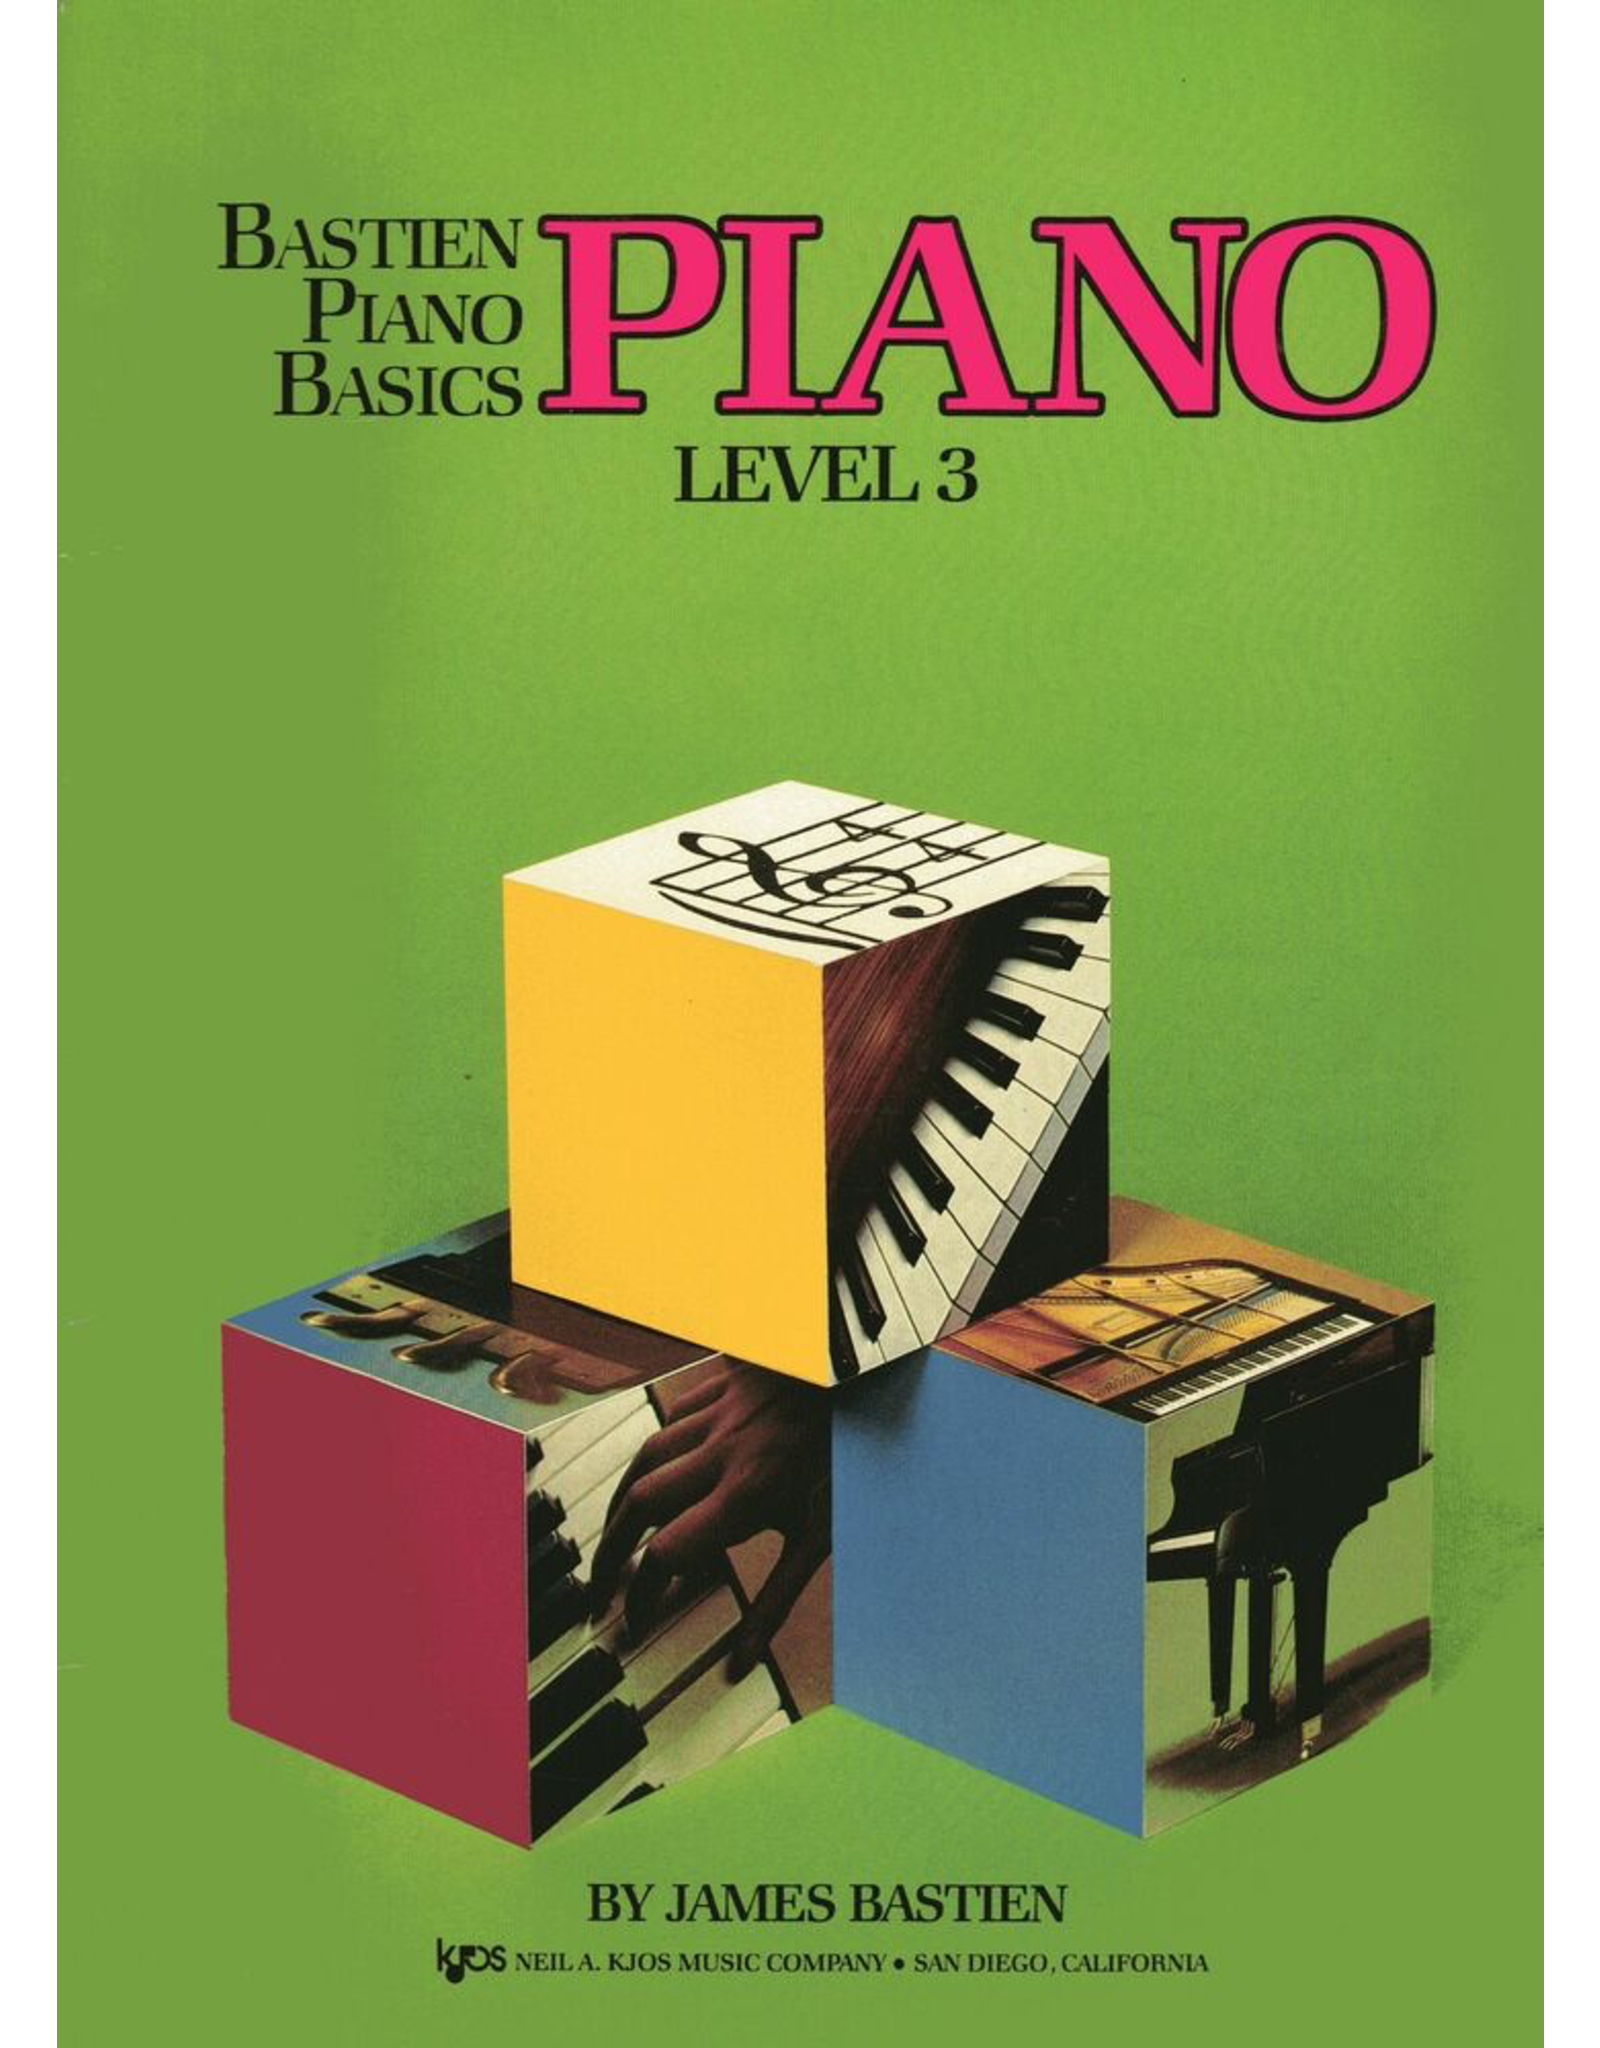 Kjos Bastien Piano Basics Piano Level 3 *